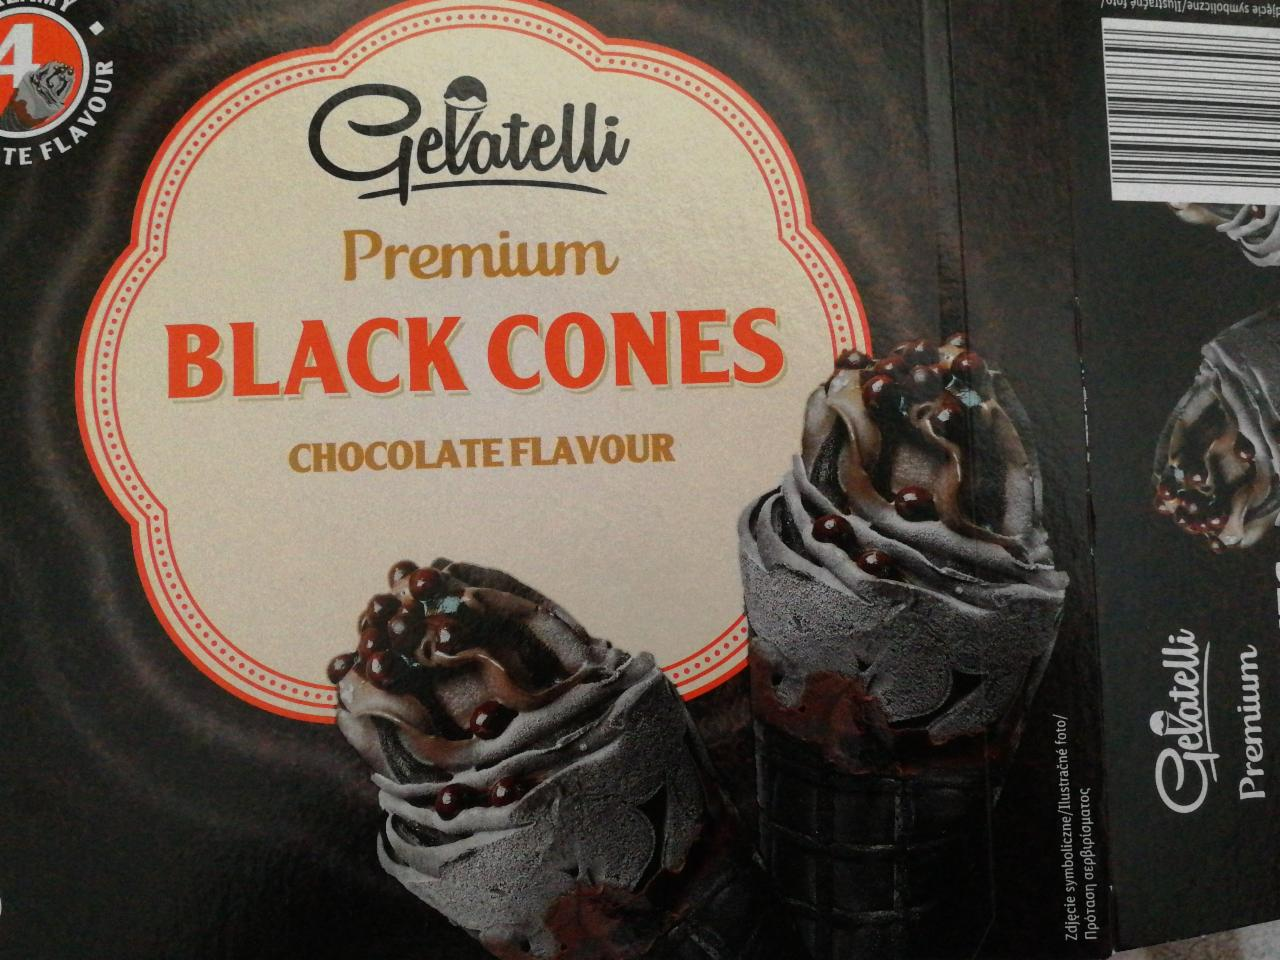 Fotografie - Black Cones Chocolate flavour Gelatelli Premium